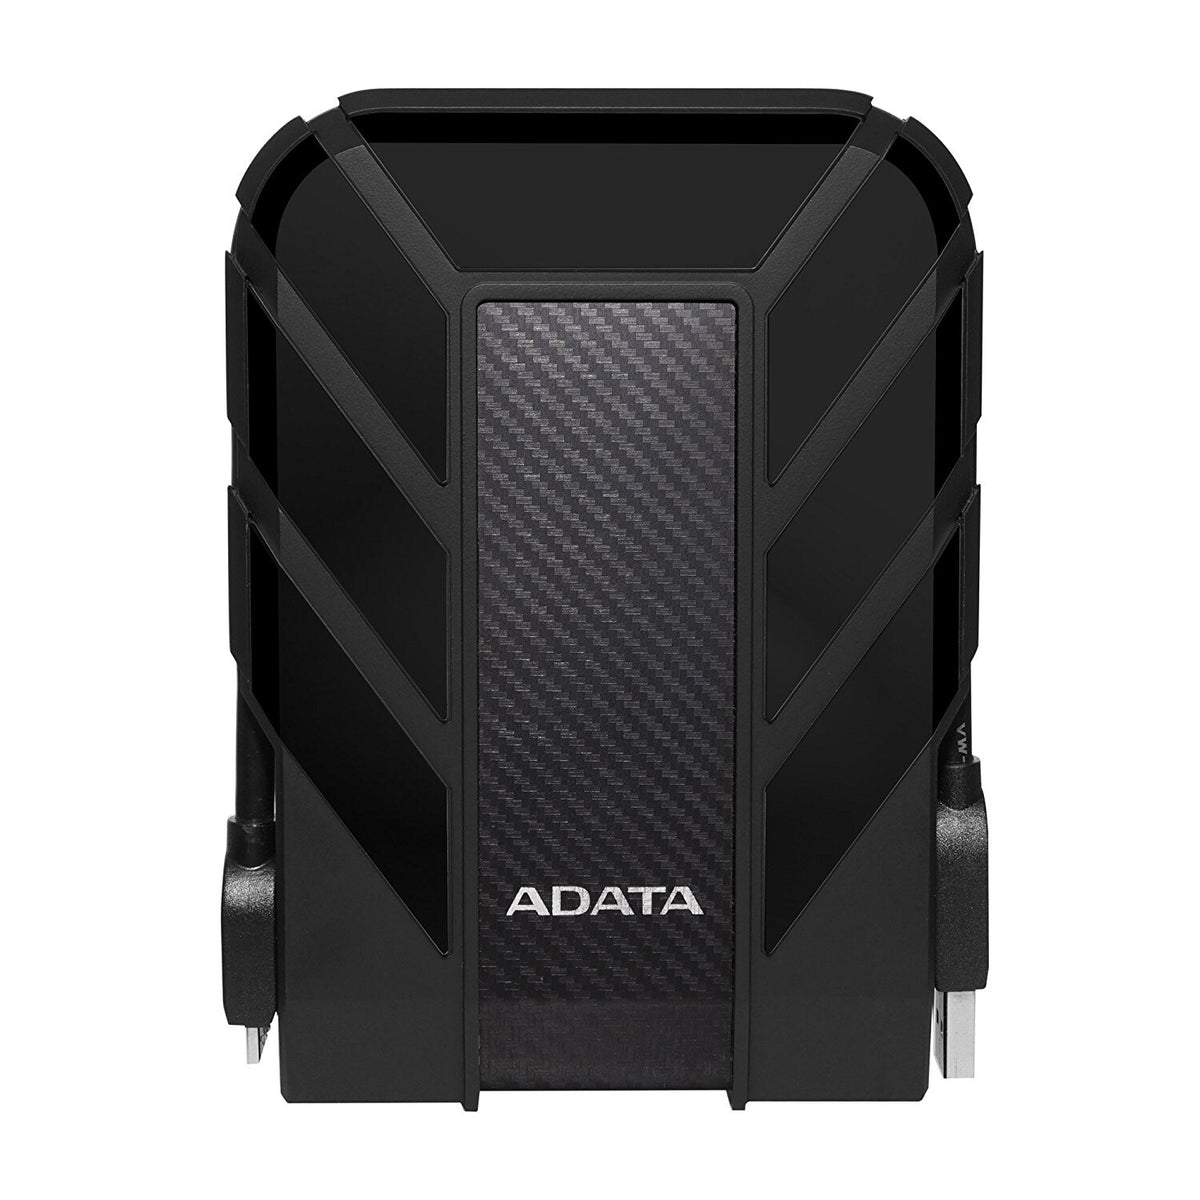 ADATA HD710 Pro - External HDD in Black - 2 TB